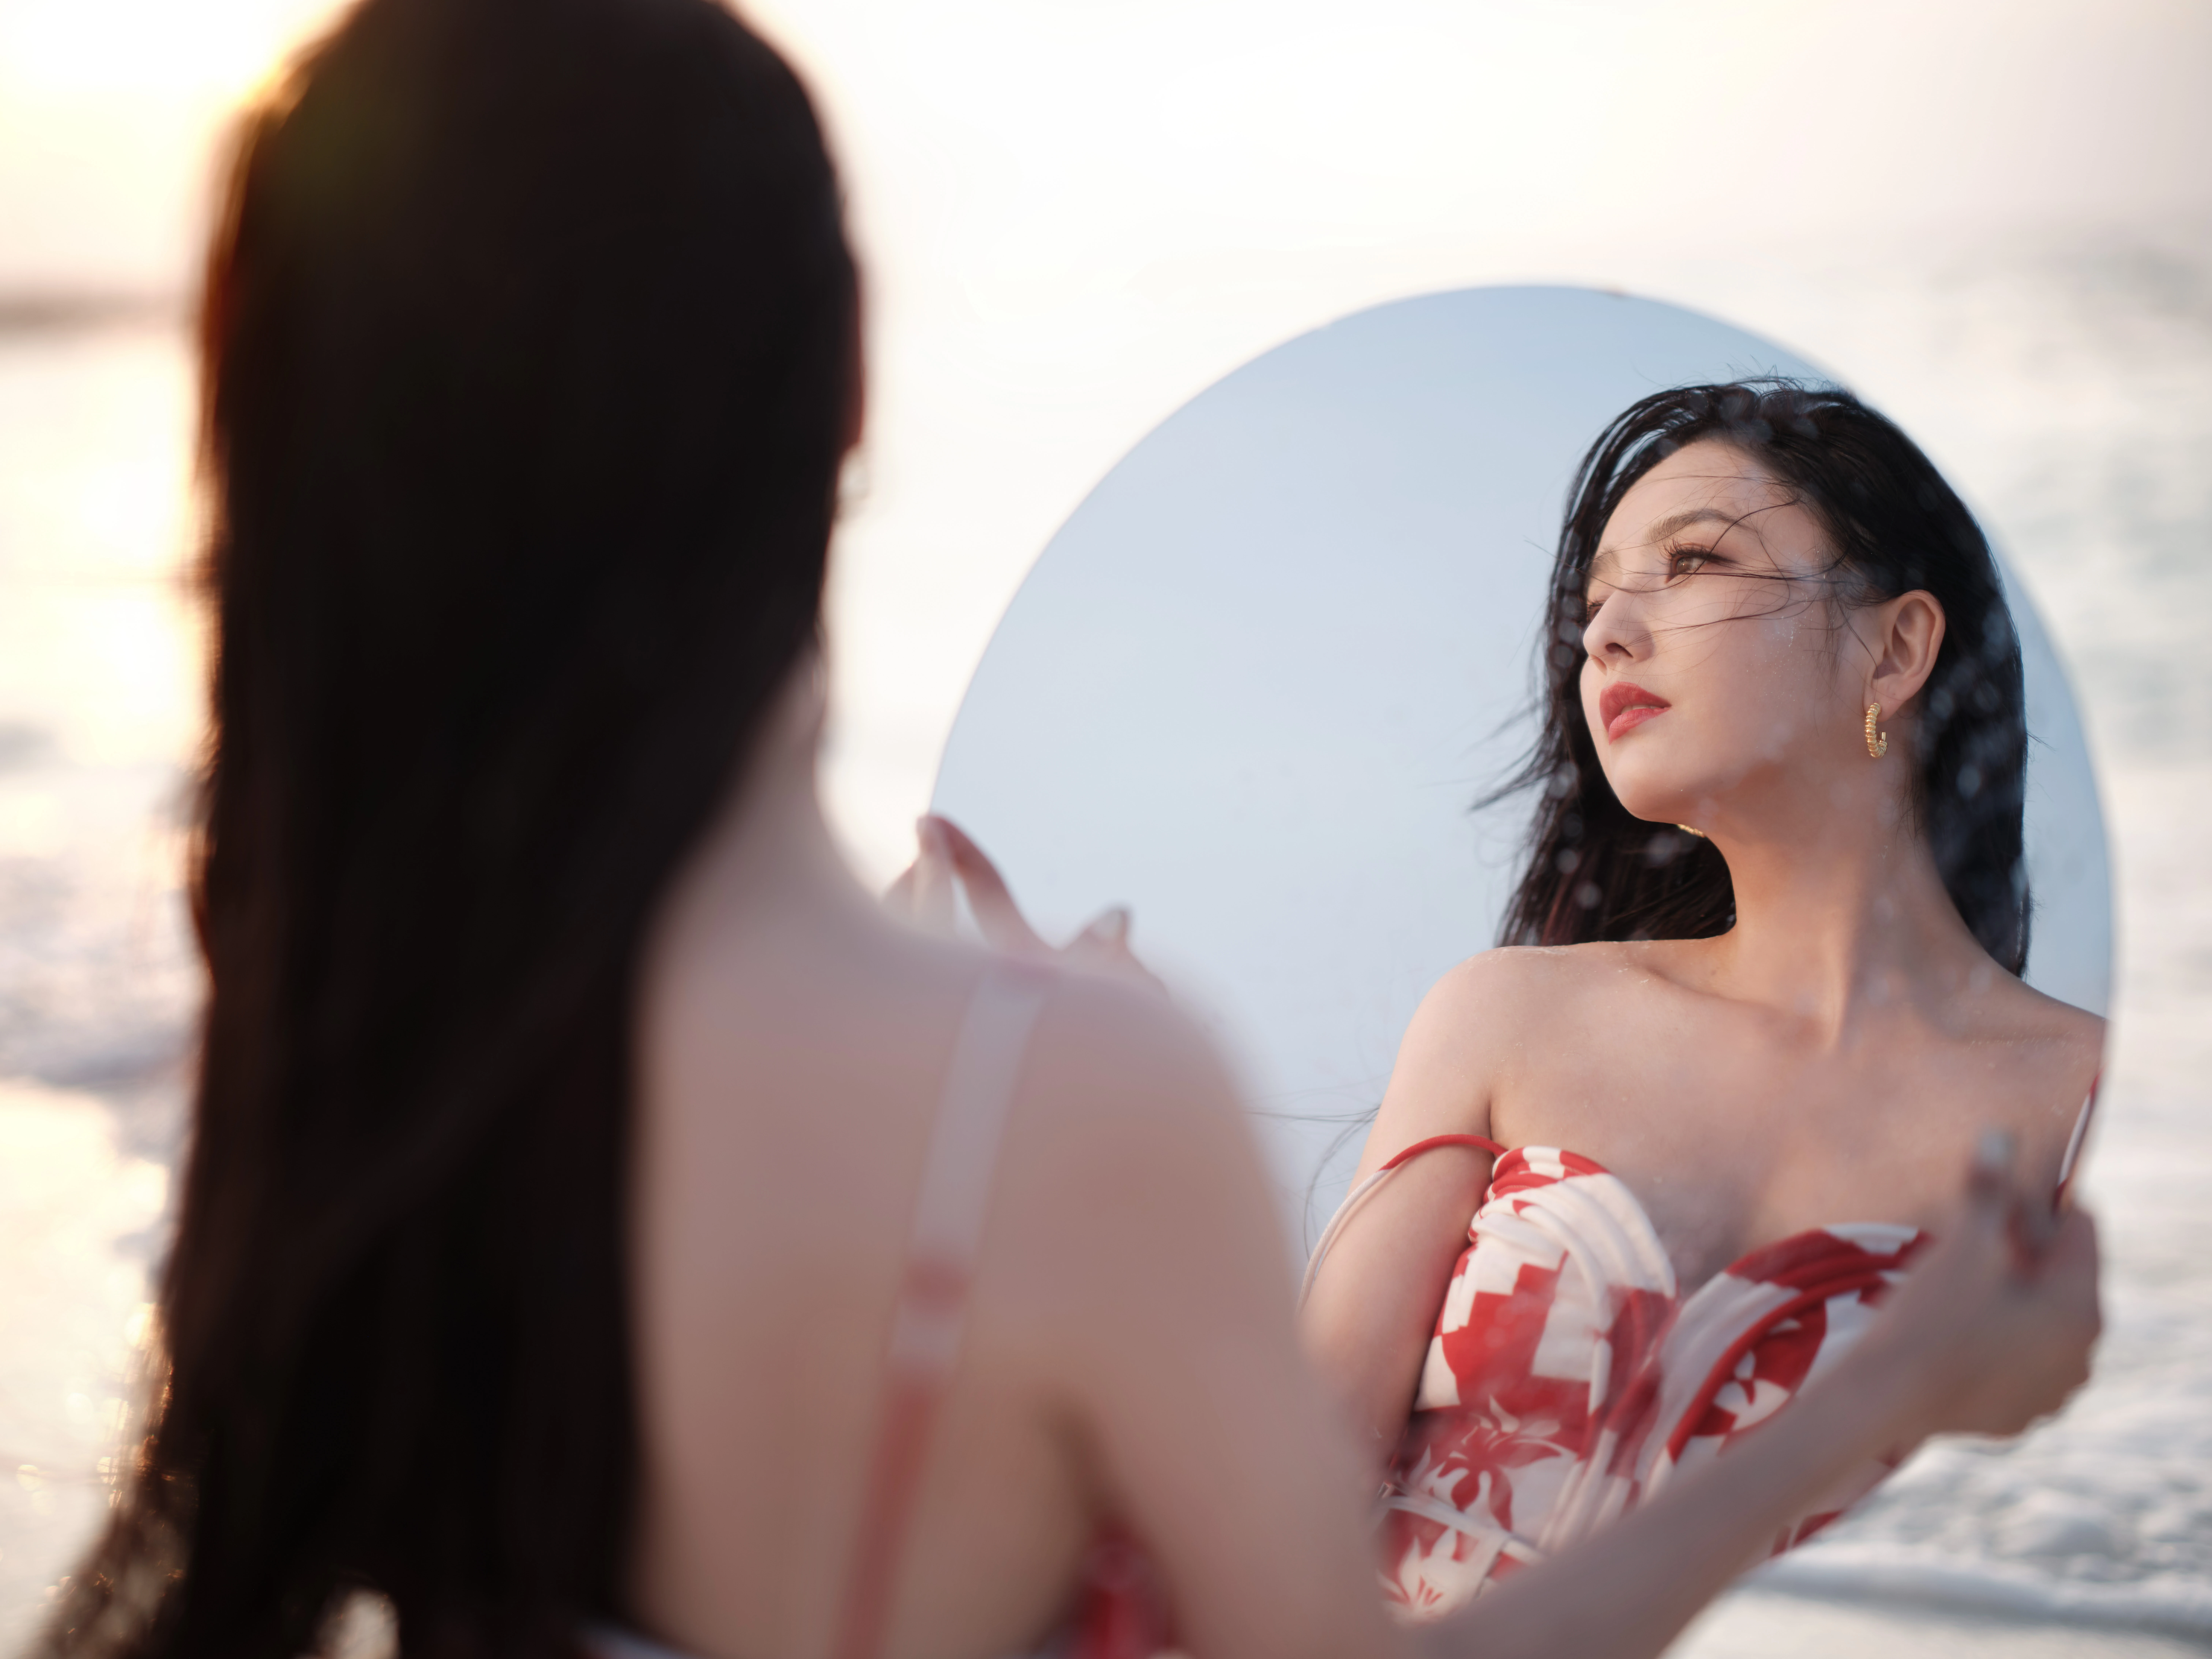 佟丽娅新春海边写真 红色吊带连衣裙笑容甜美,1 (2)